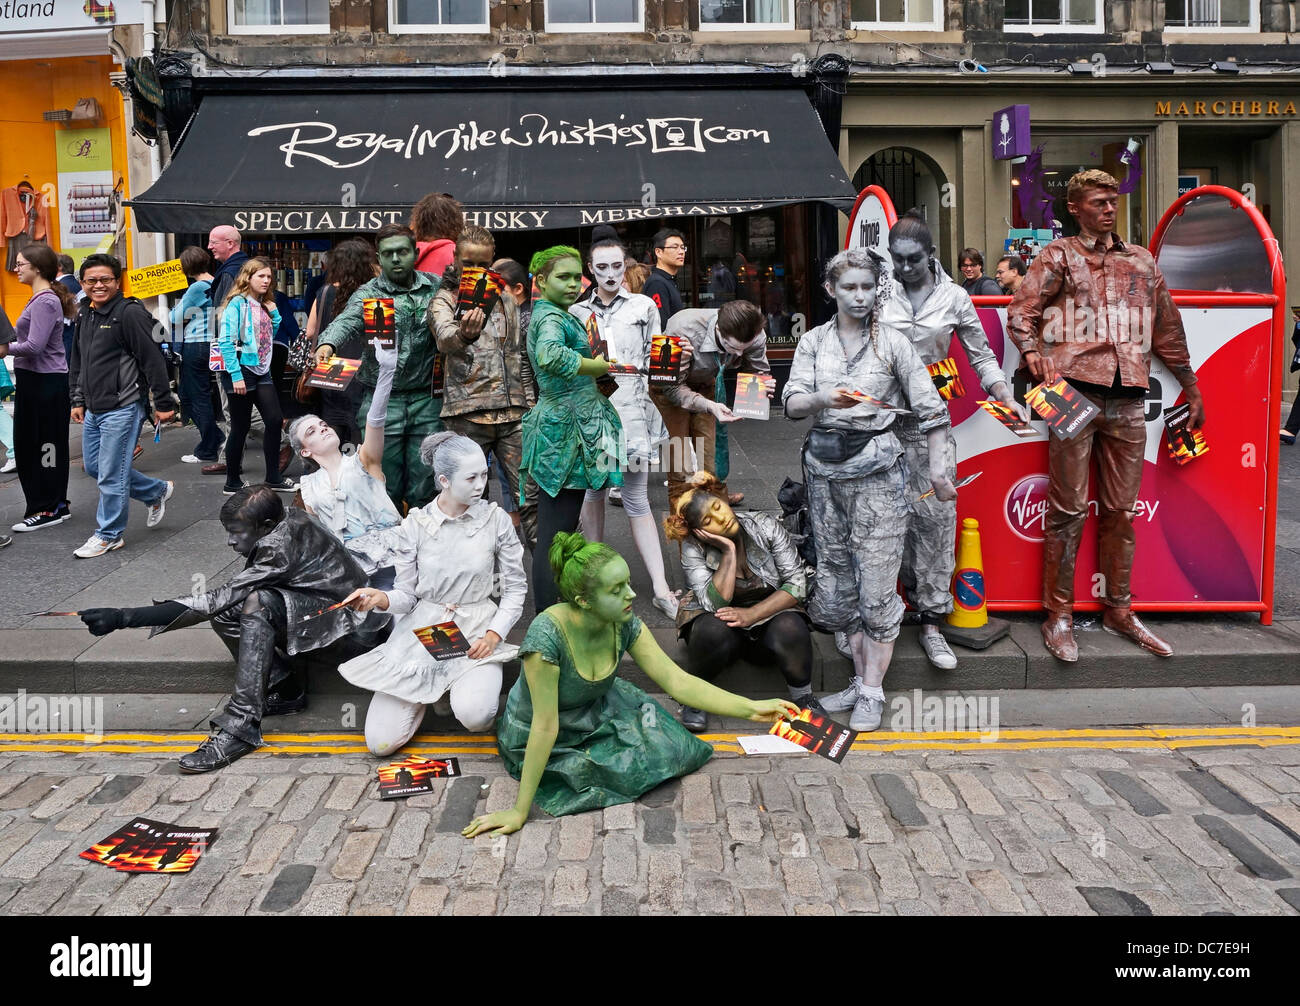 Promoción de artistas marginales centinelas show en la Royal Mile de Edimburgo durante el Festival Fringe de Edimburgo de 2013 Foto de stock